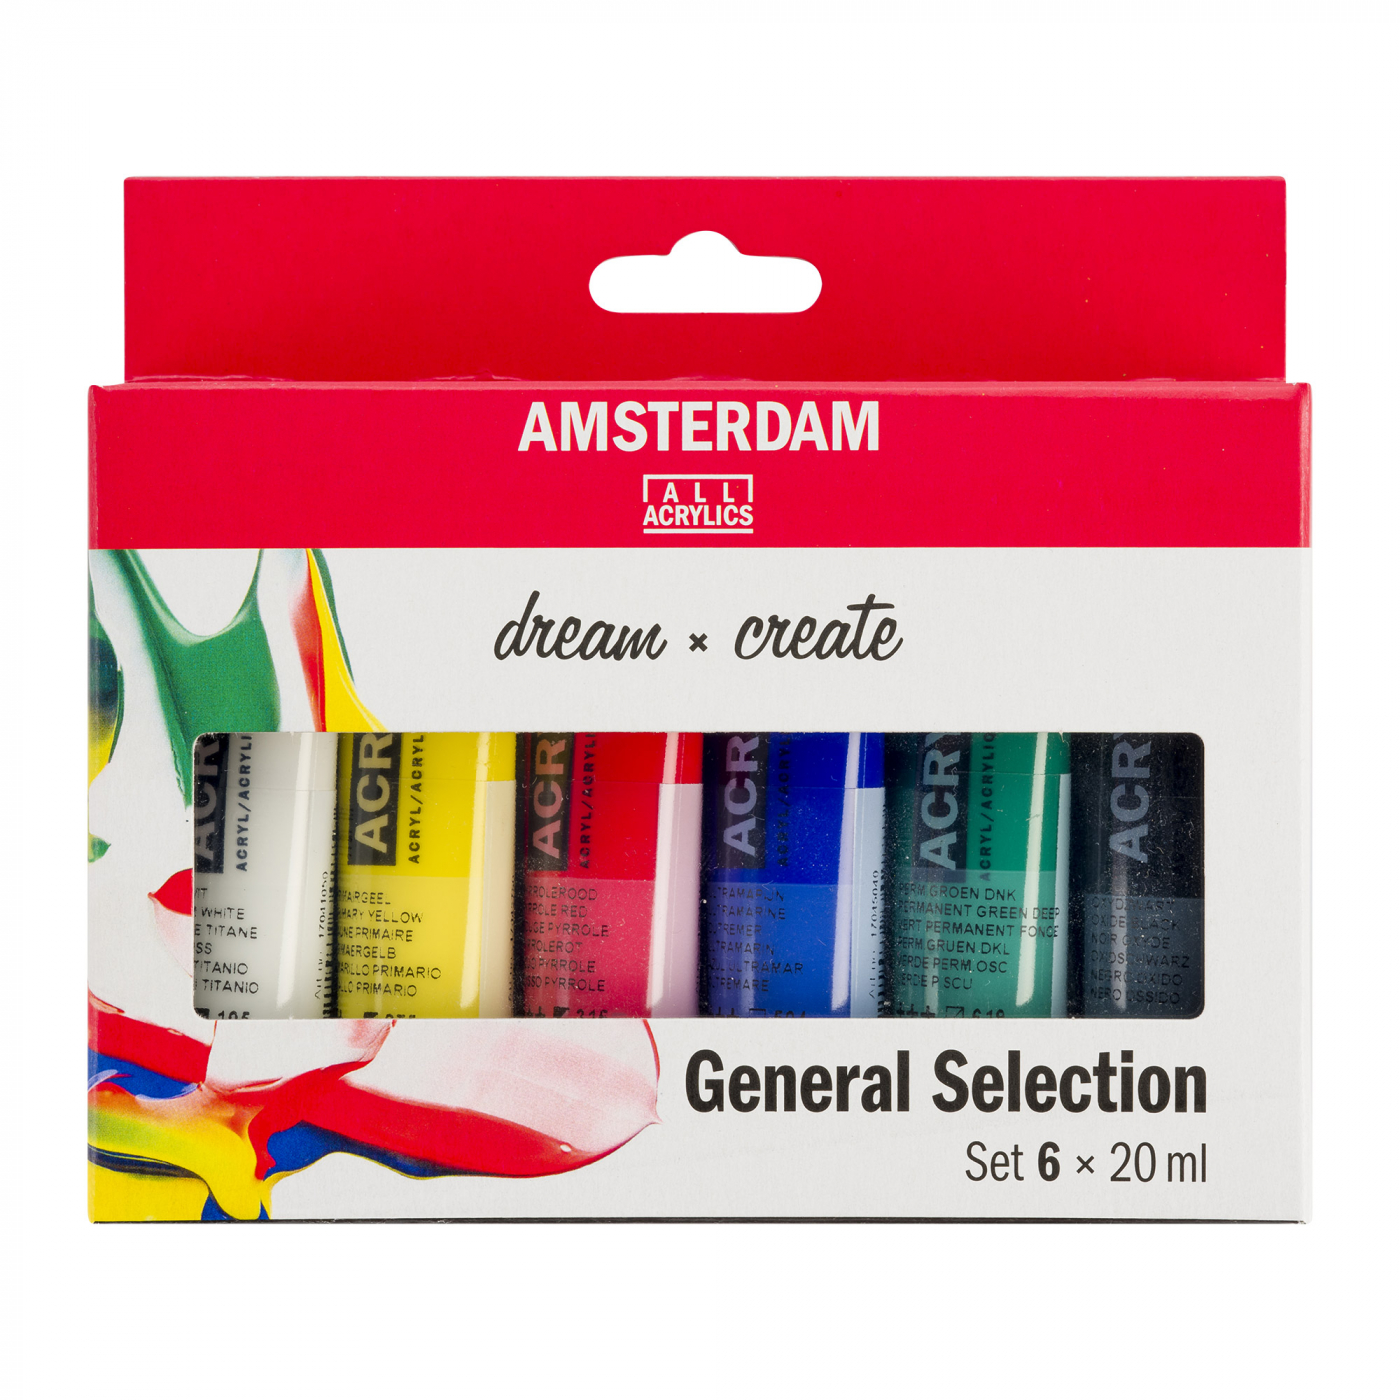 Akrylfärg General Selection Set 6 x 20 ml i gruppen Konstnärsmaterial / Färger / Akrylfärg hos Pen Store (111755)